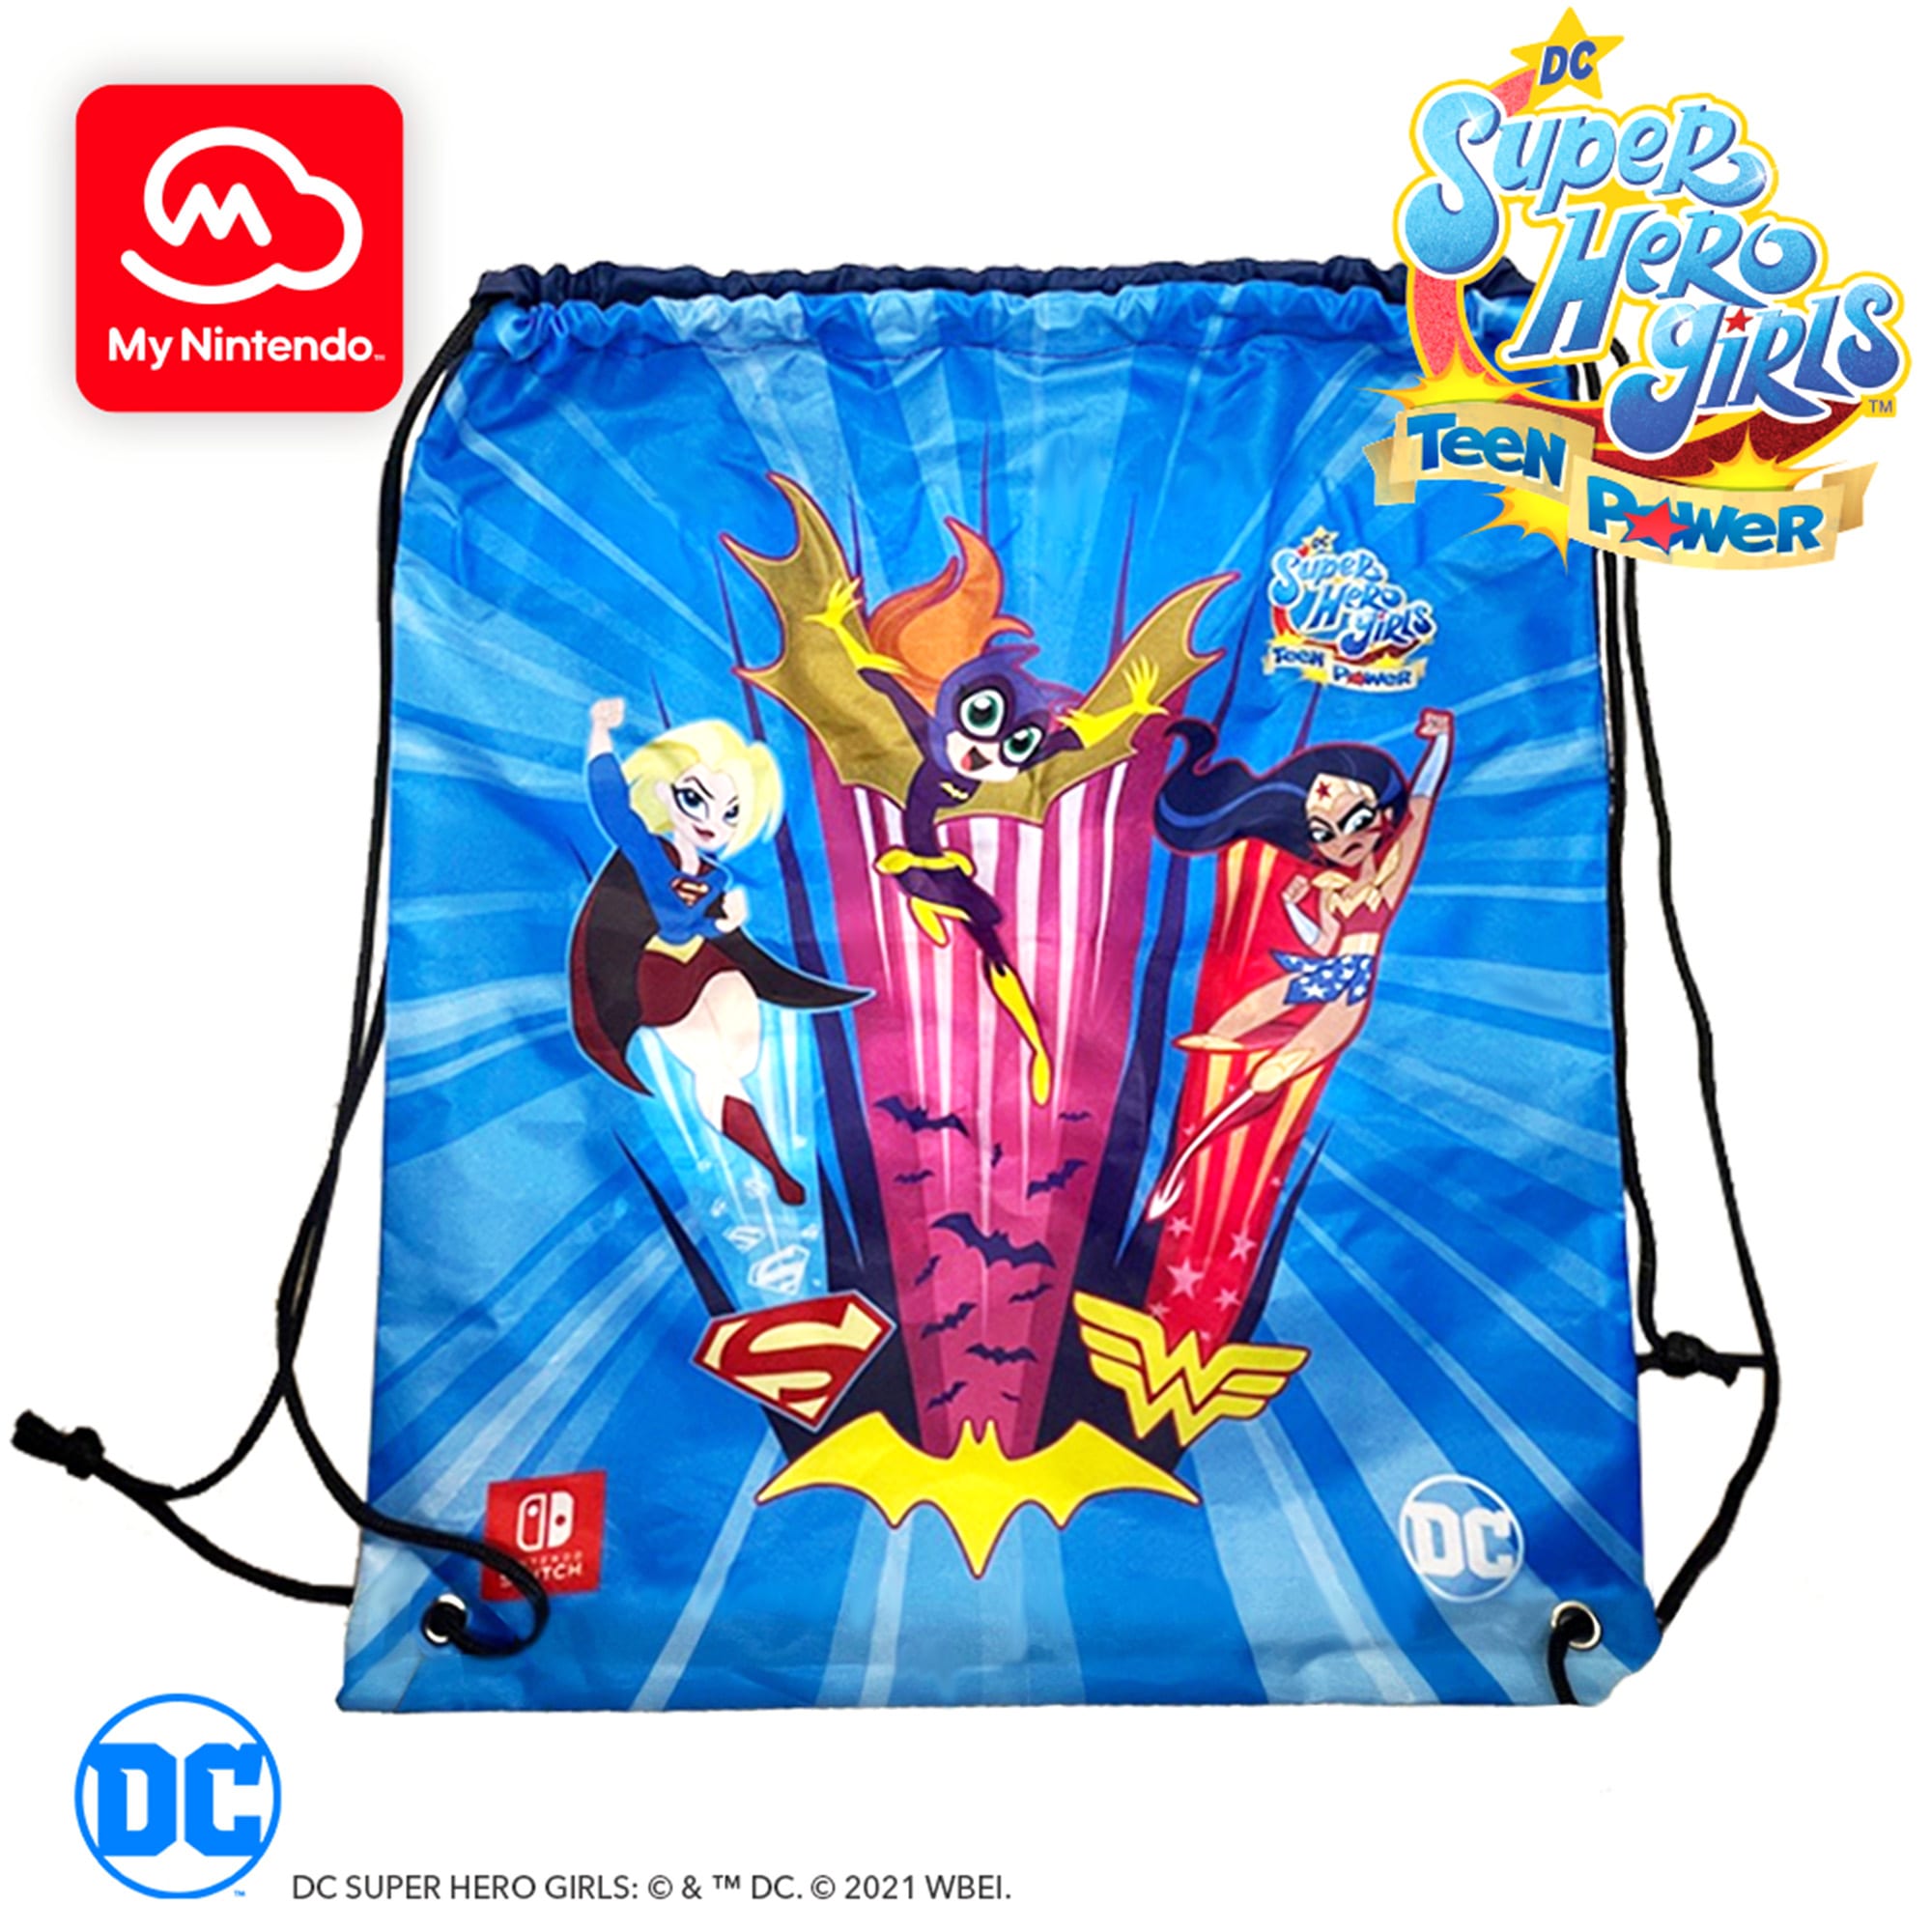 DC Super Hero Girls™: Teen Power Drawstring Bag